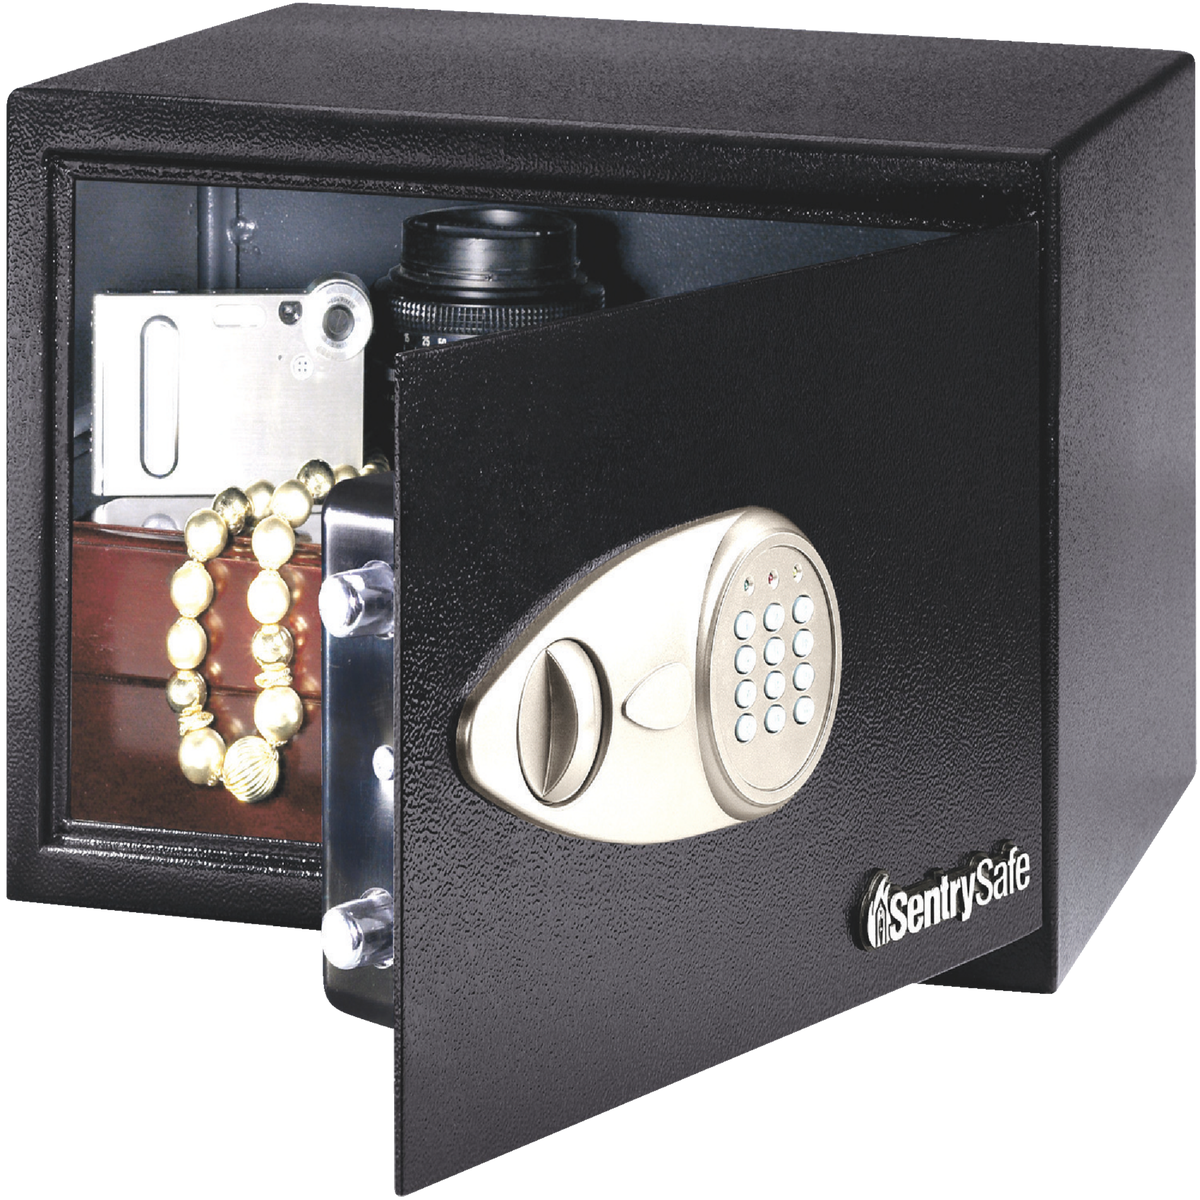 install batteries digital sentry safes